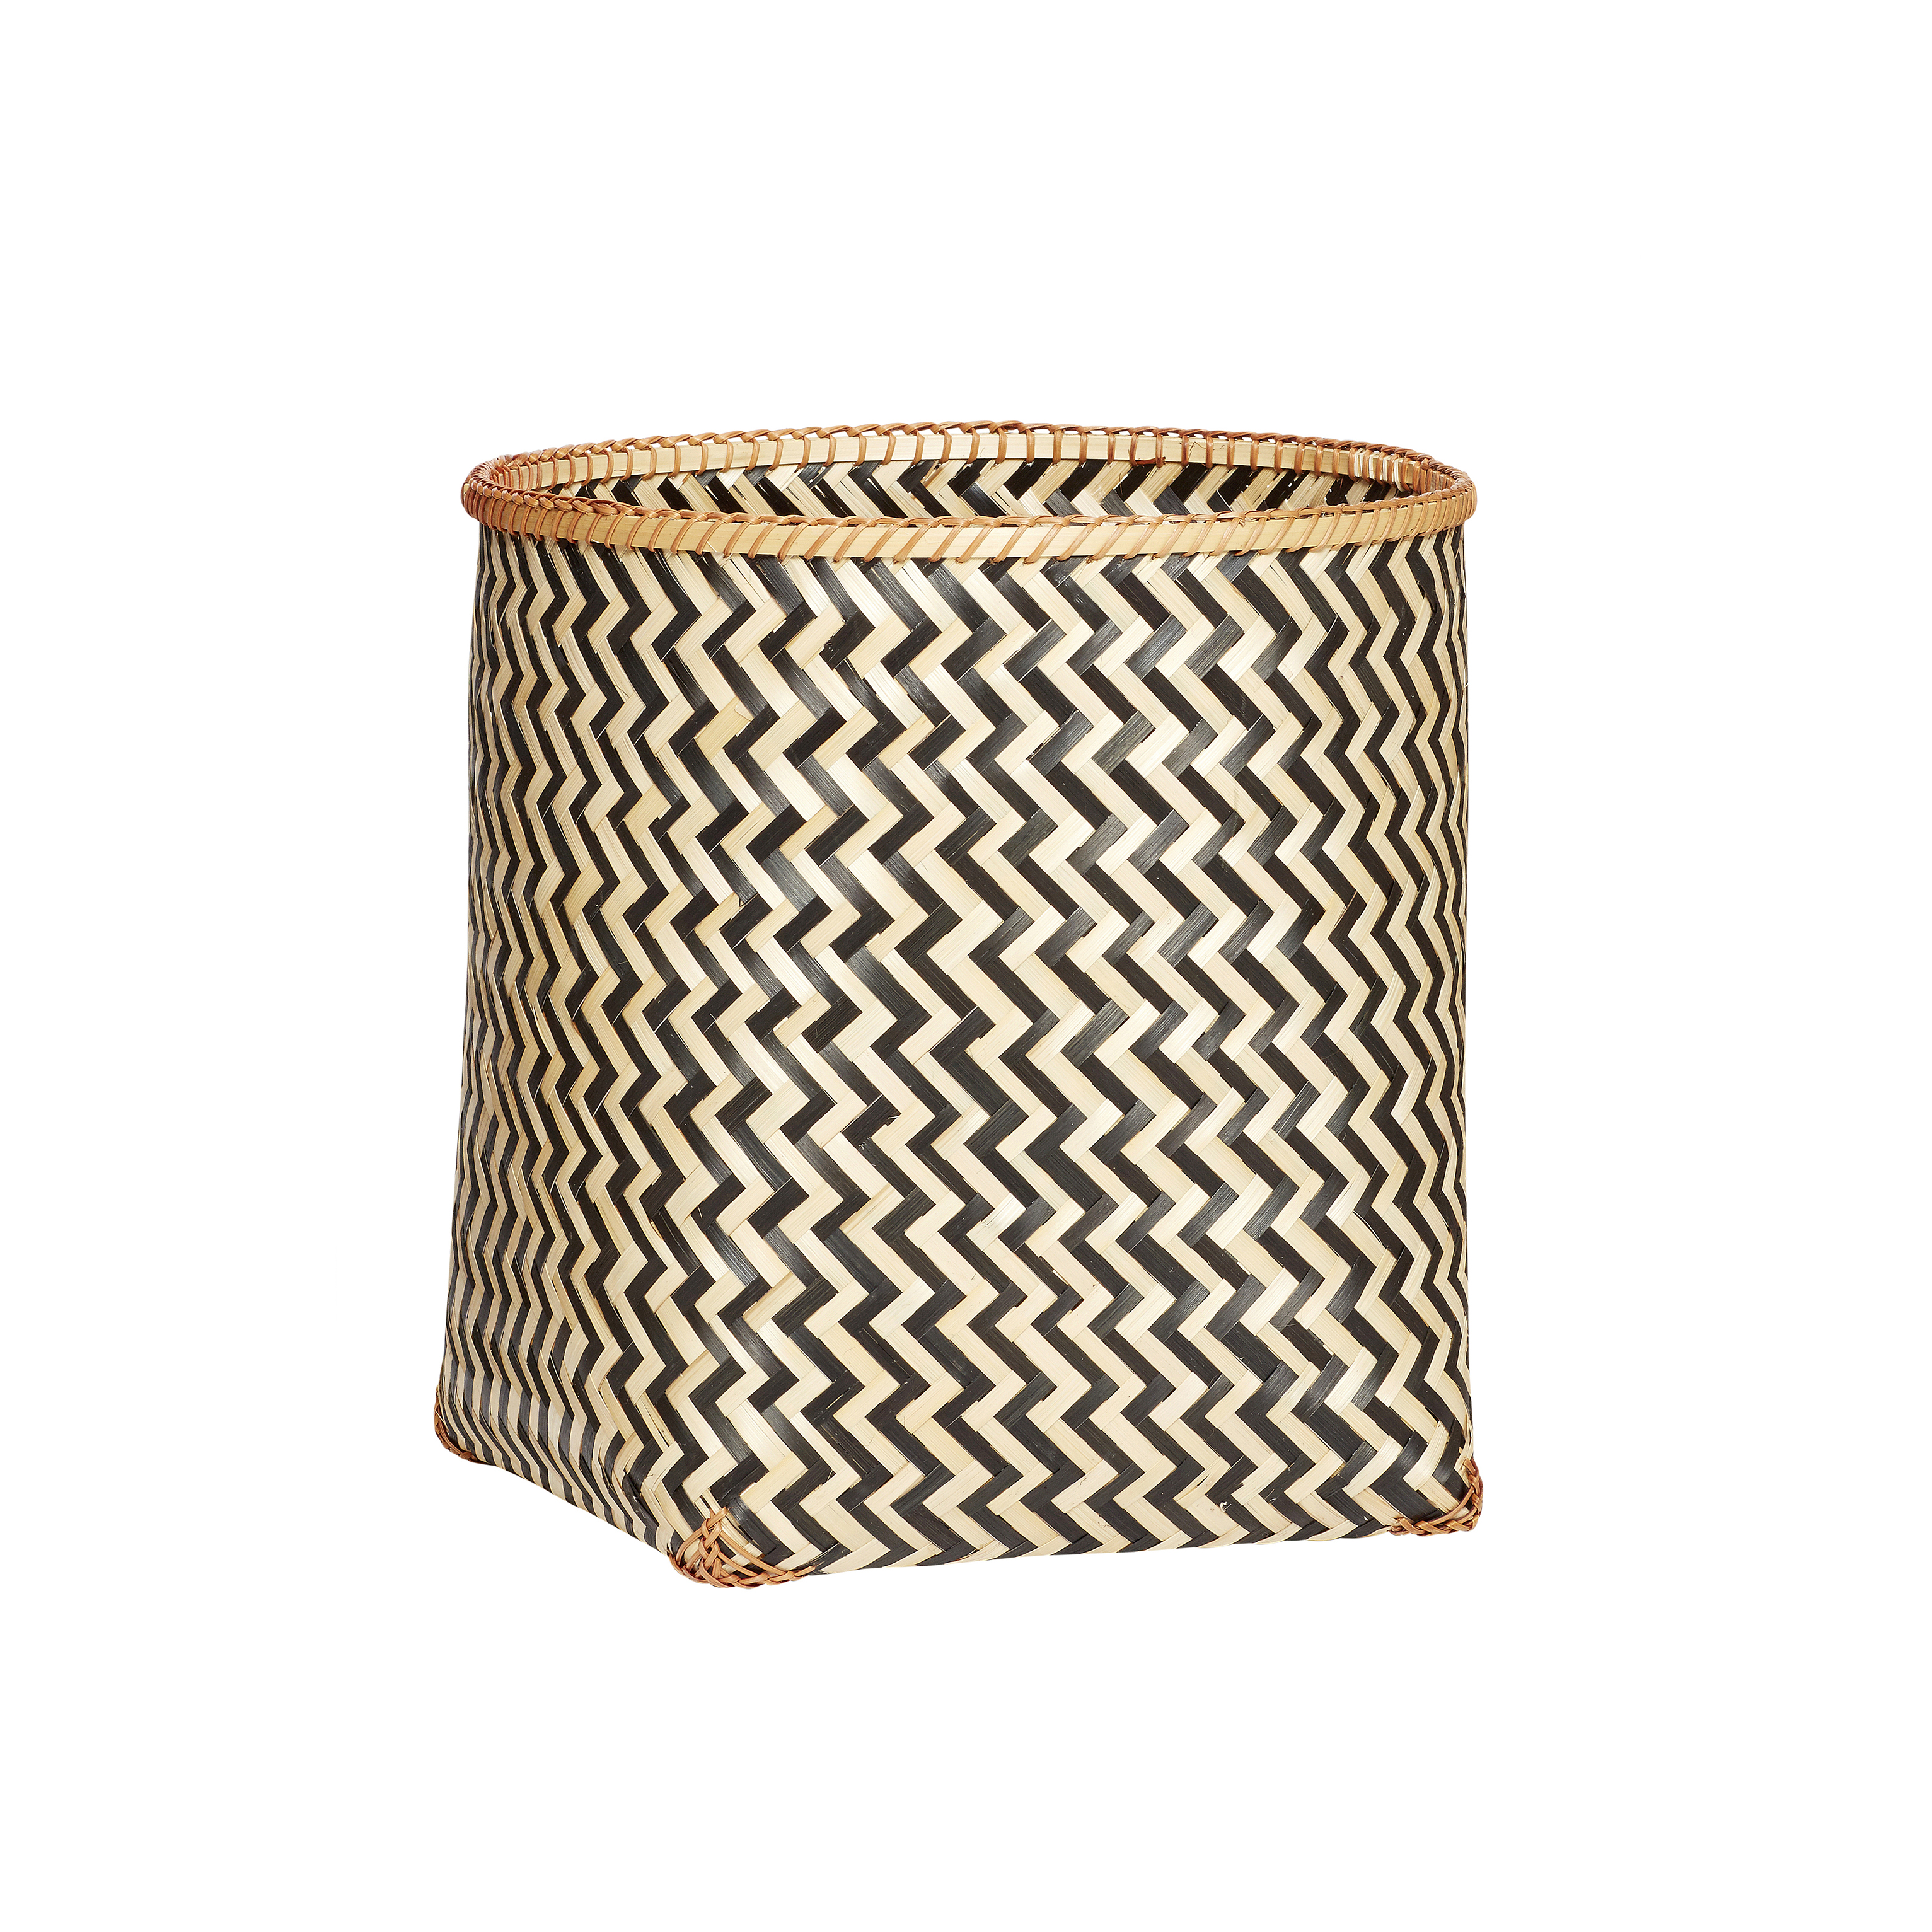 Hubsch Round Bamboo Basket with Black Zig Zag Pattern in Medium